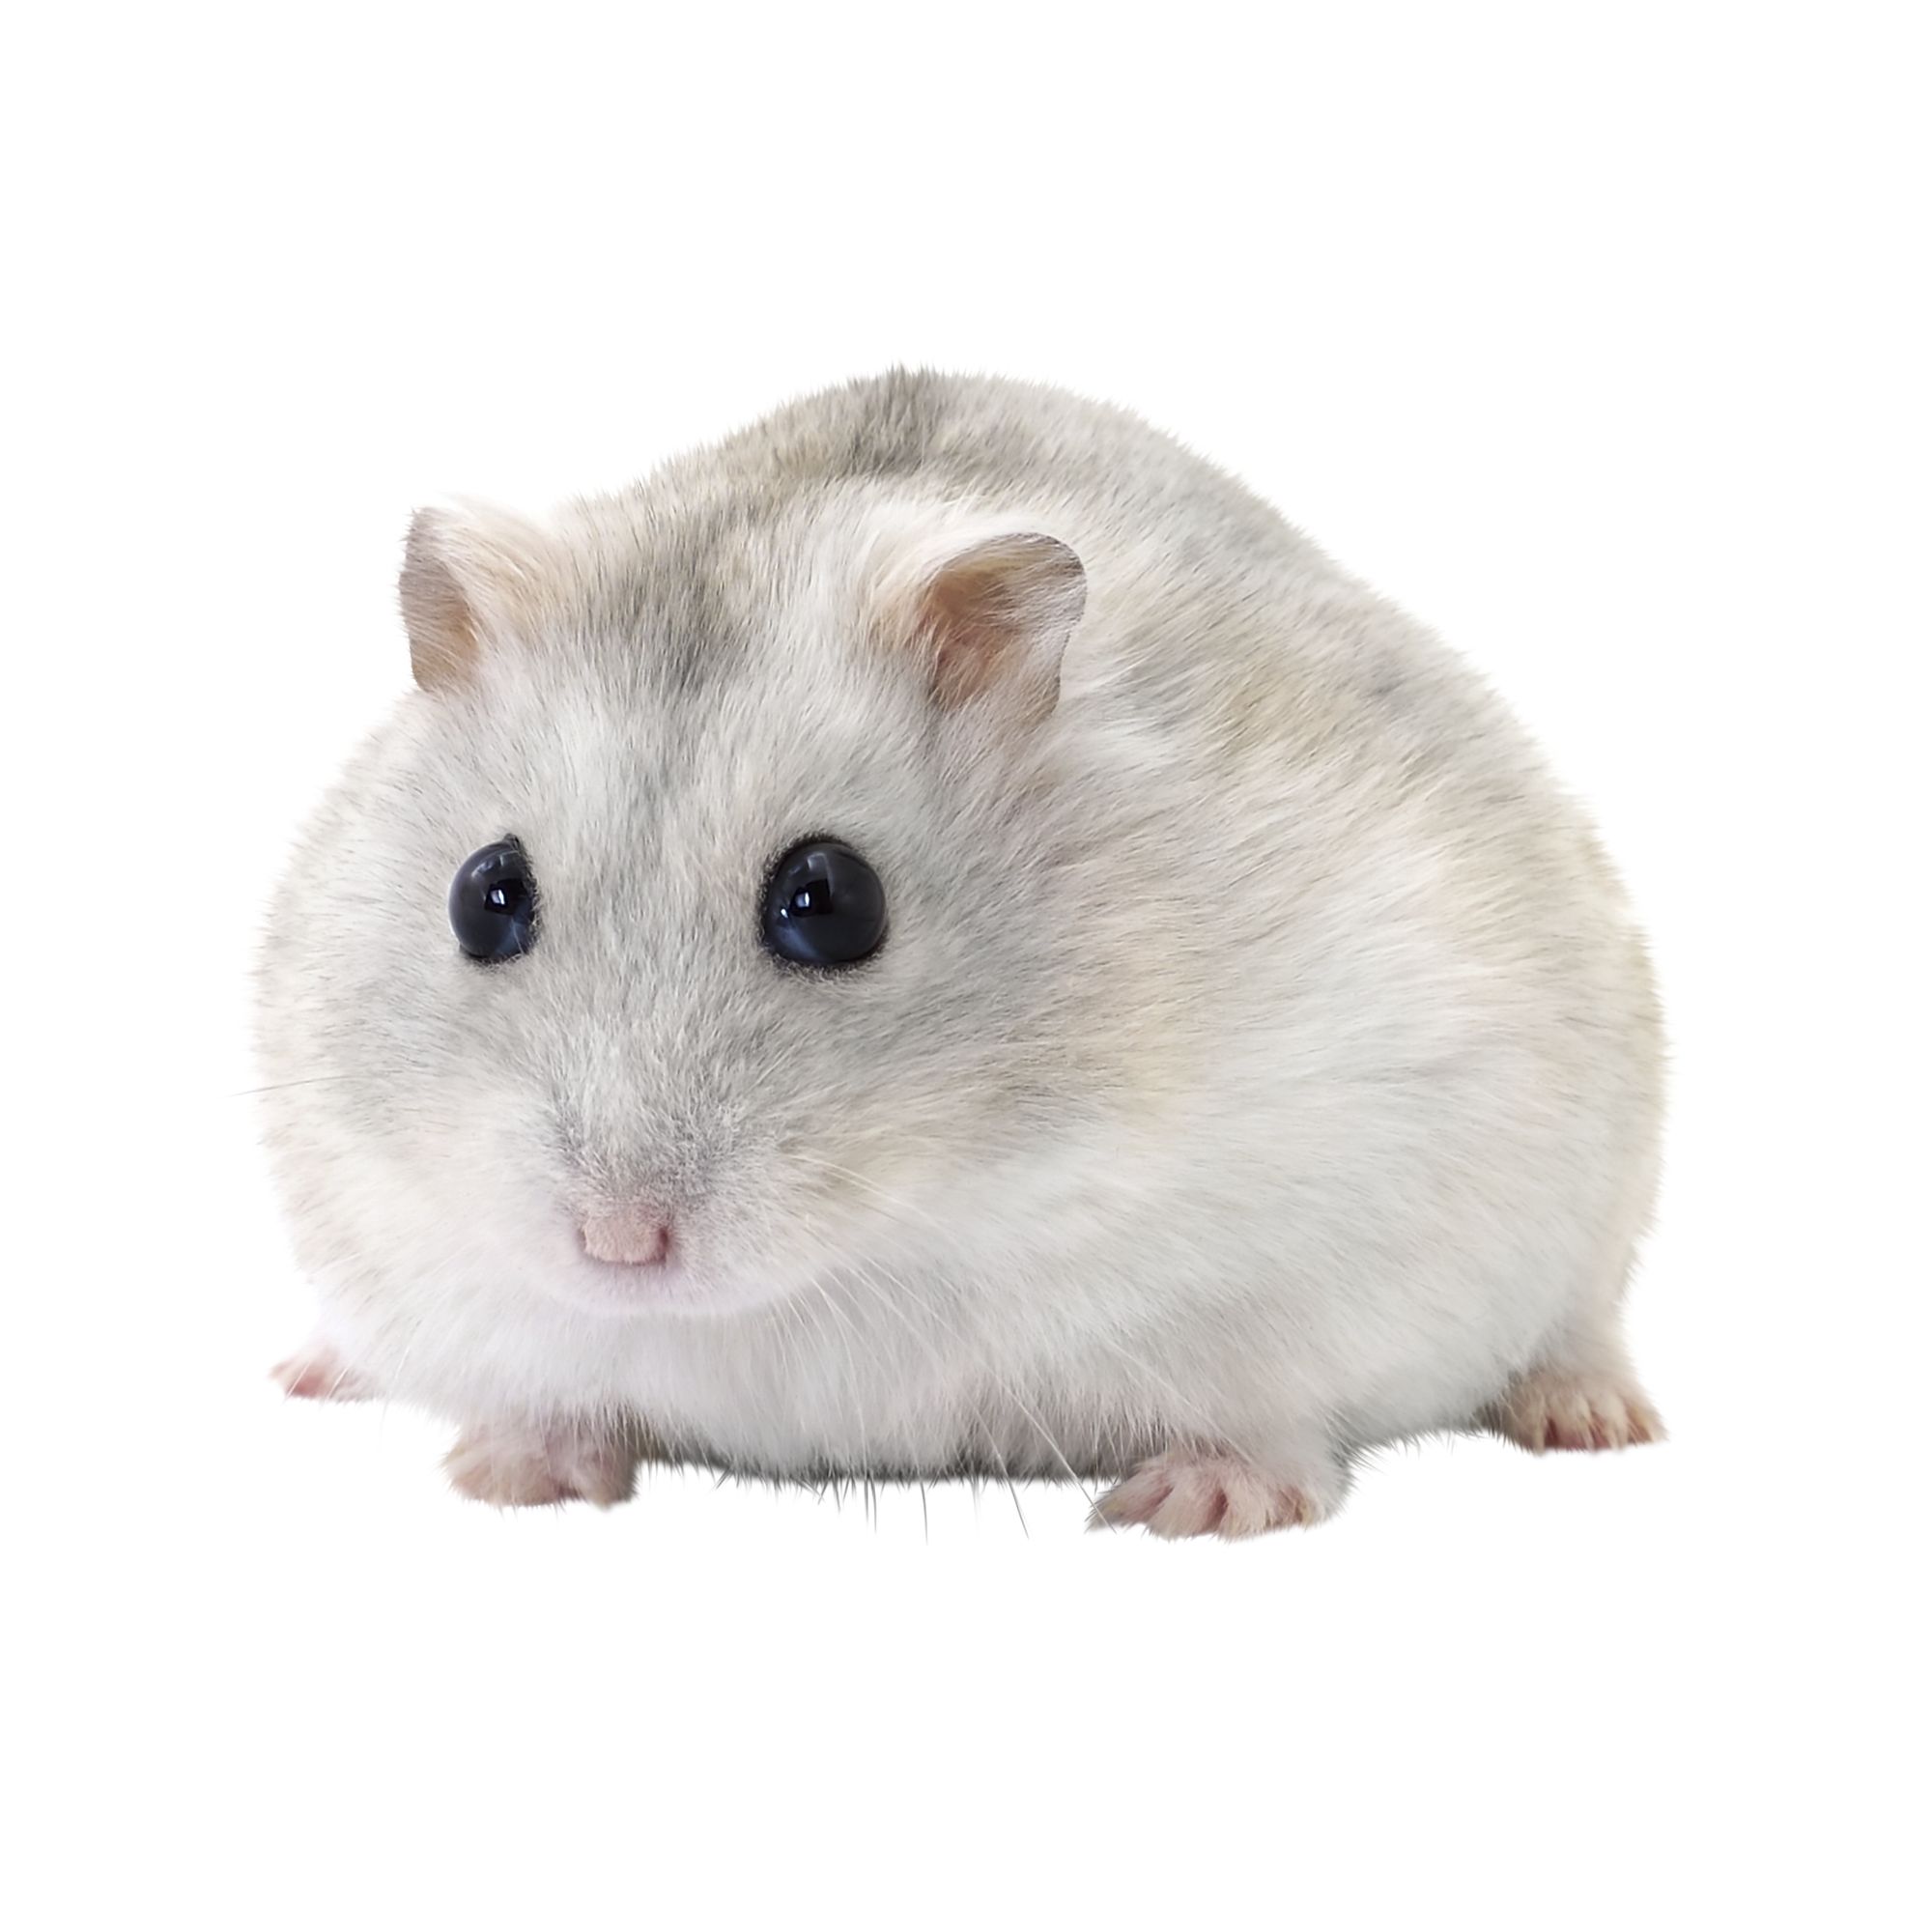 Female Winter White Hamster For Sale 